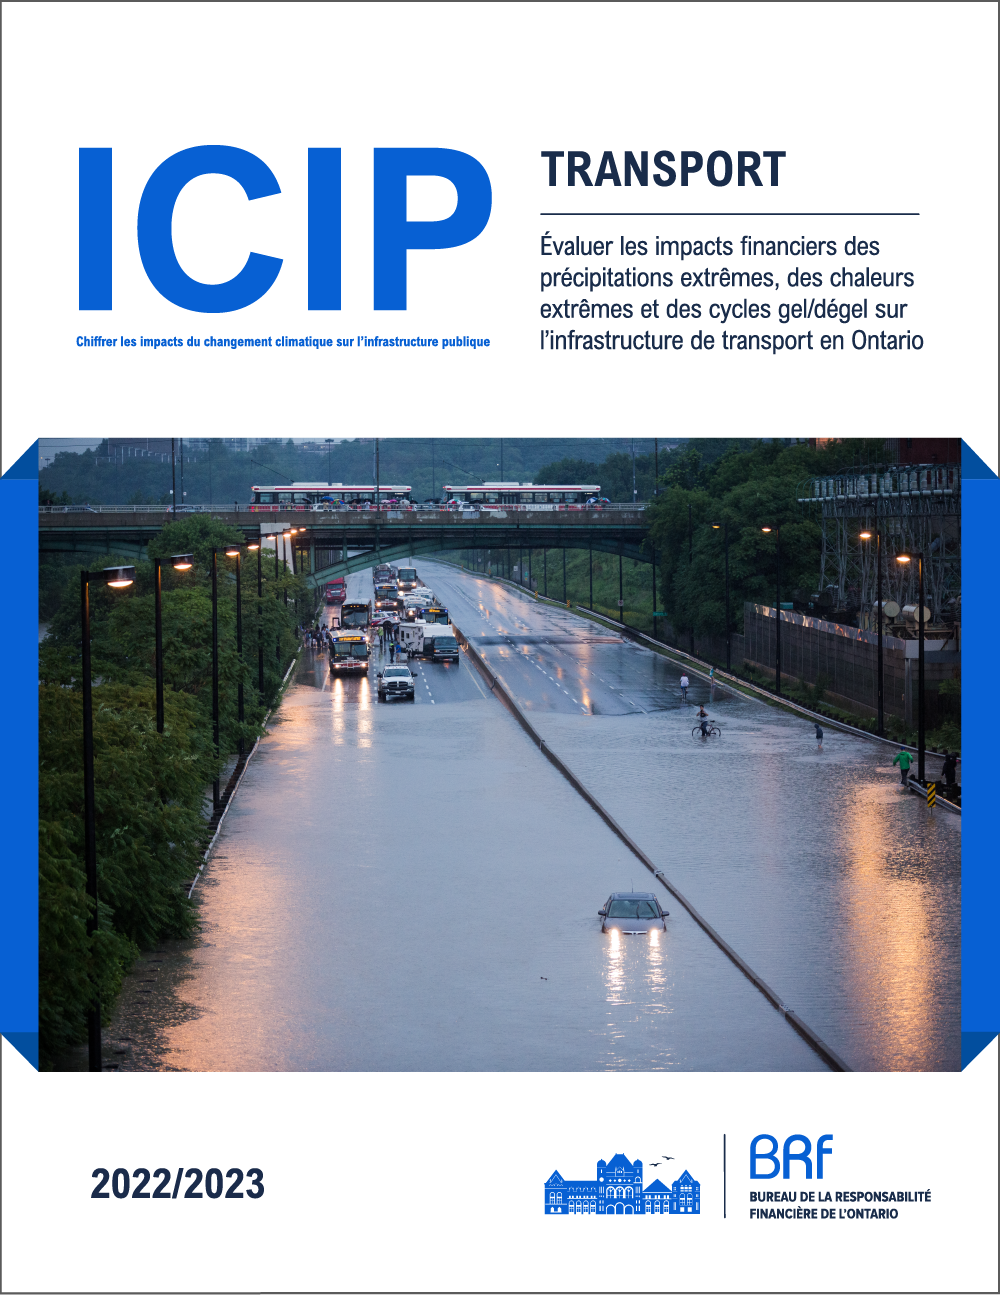 ICIP : Transport – Évaluer les impacts financiers des précipitations extrêmes, des chaleurs extrêmes et des cycles gel/dégel sur l'infrastructure de transport en Ontario